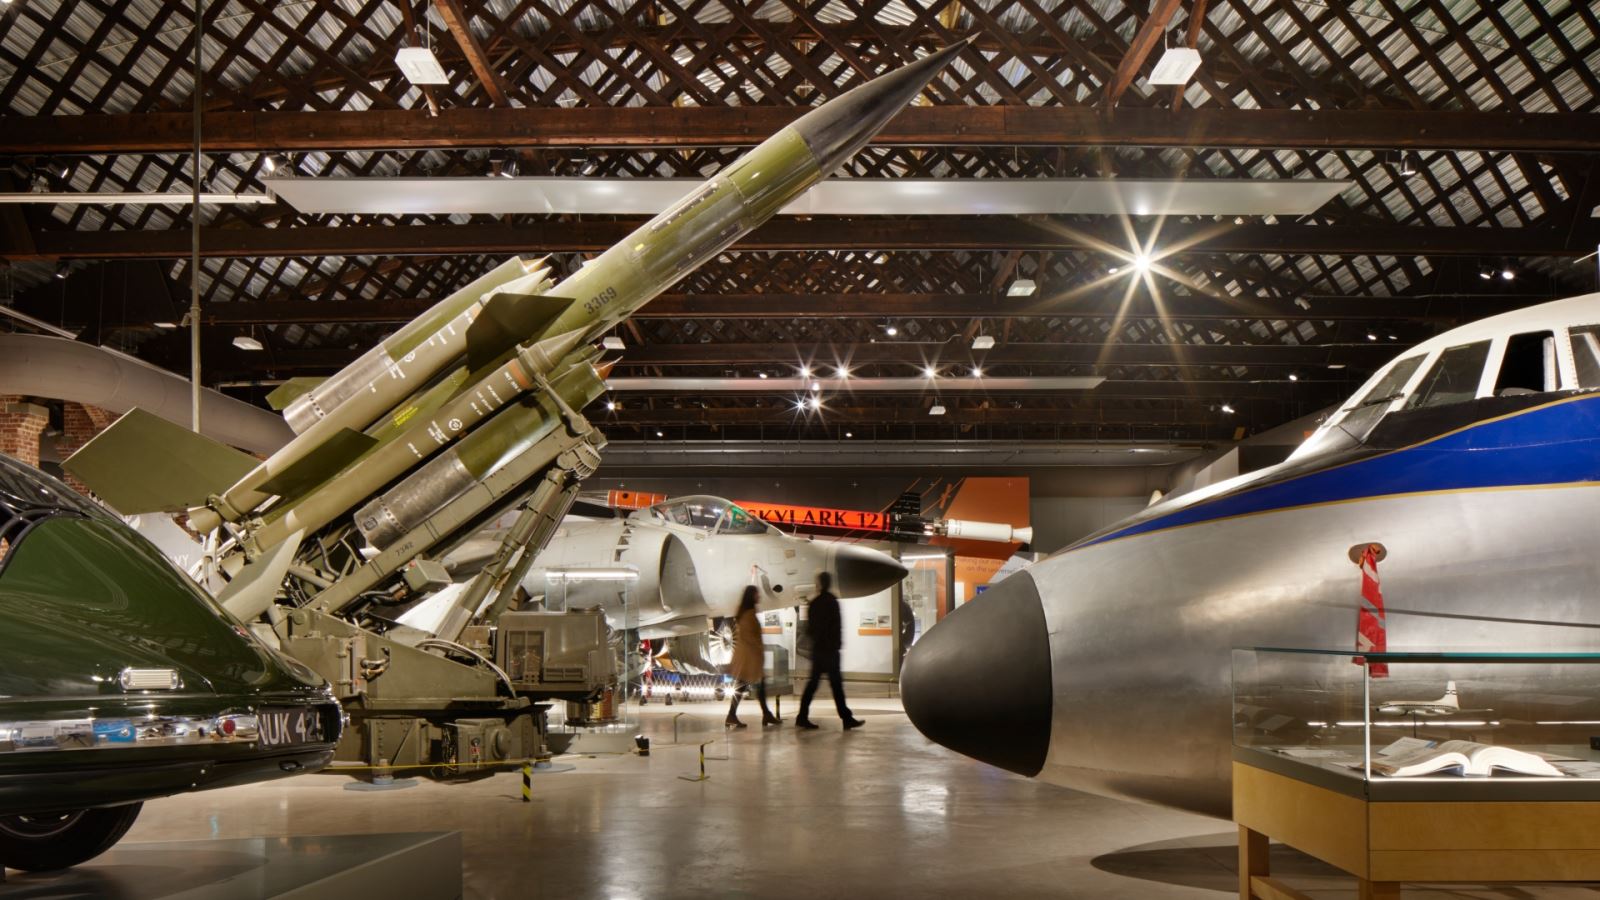 Exhibits at Aerospace Bristol